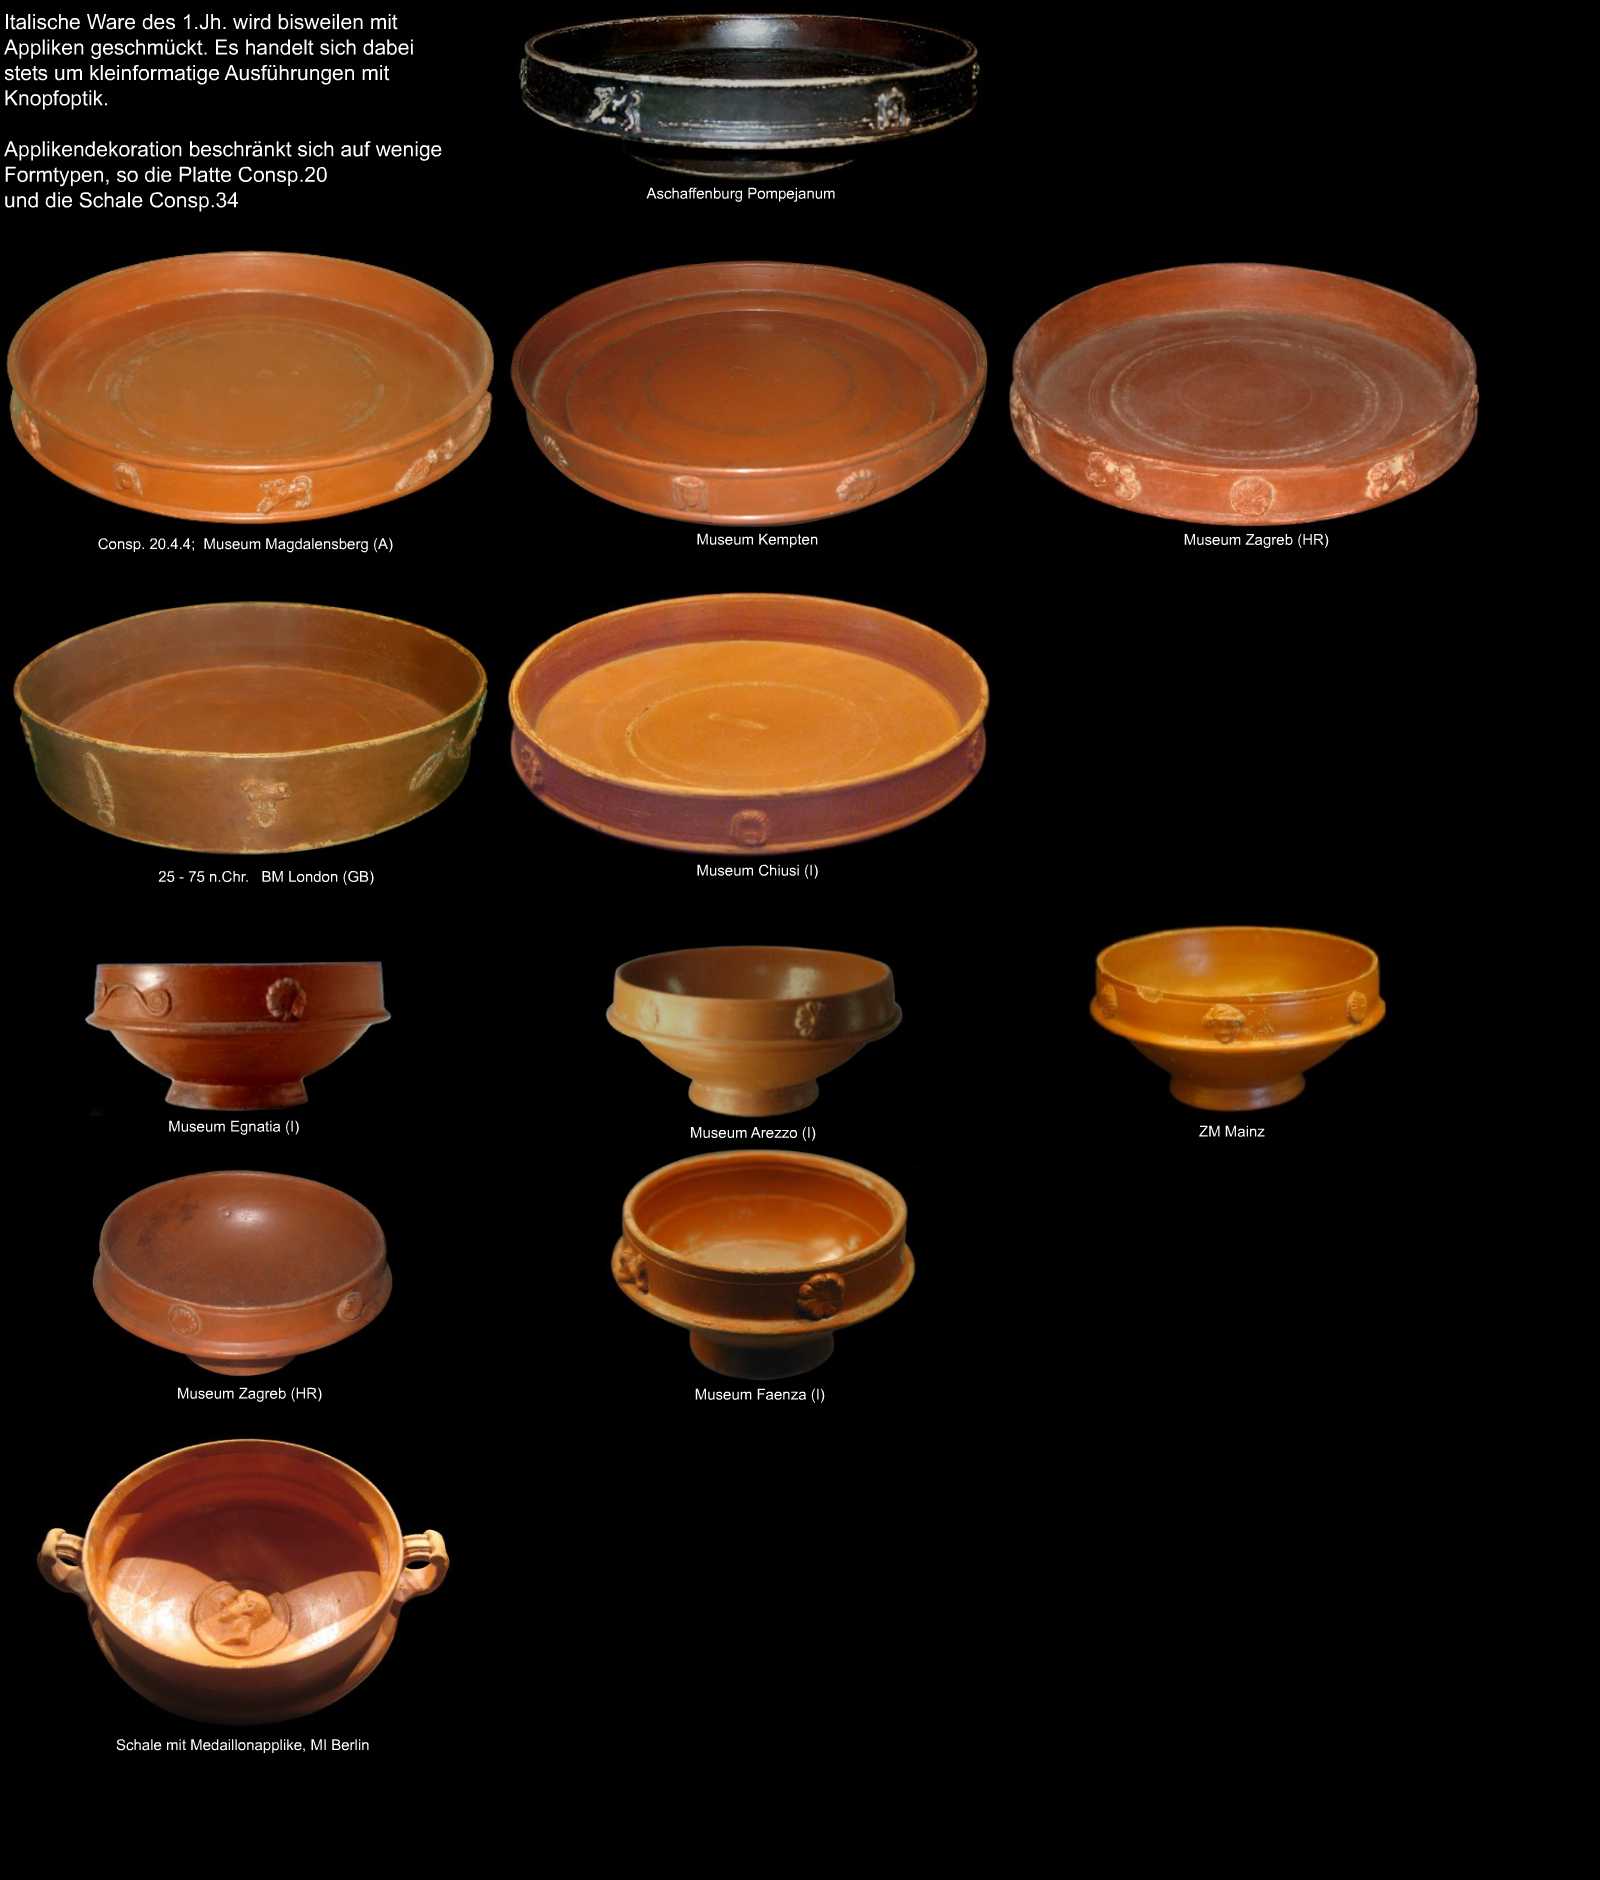 applikendekorierte Keramik